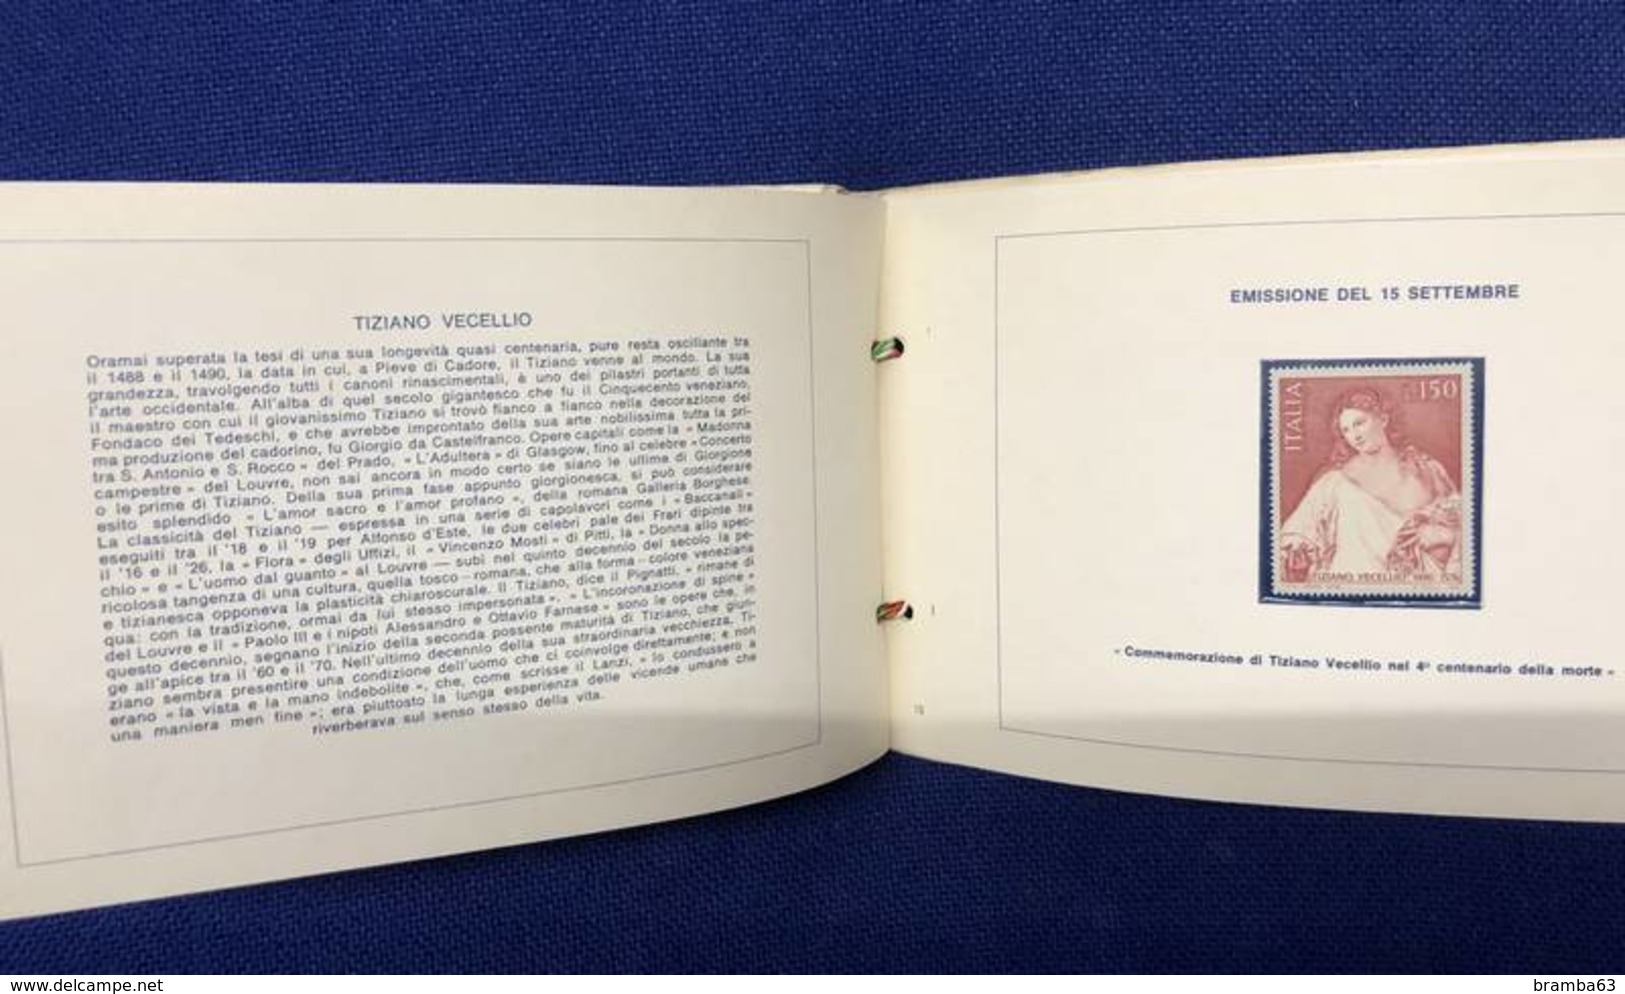 1976 Libretto francobolli emessi amministrazione postale italiana - completo nuovo (come da scansione)